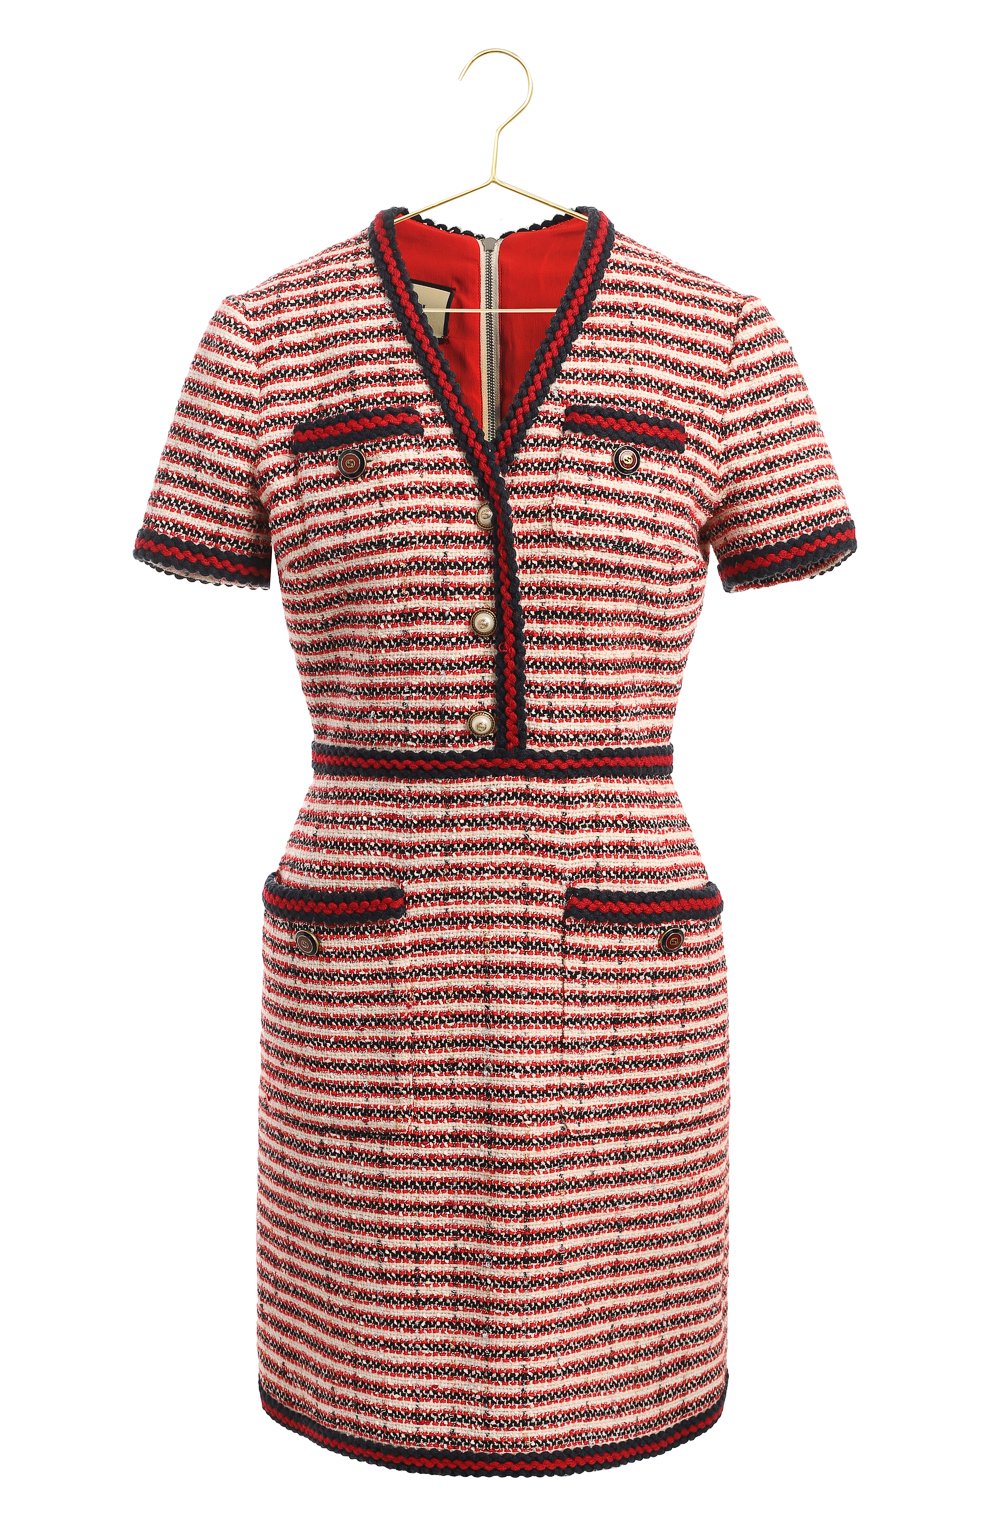 Платье из хлопка и шерсти | Gucci | Красный - 1